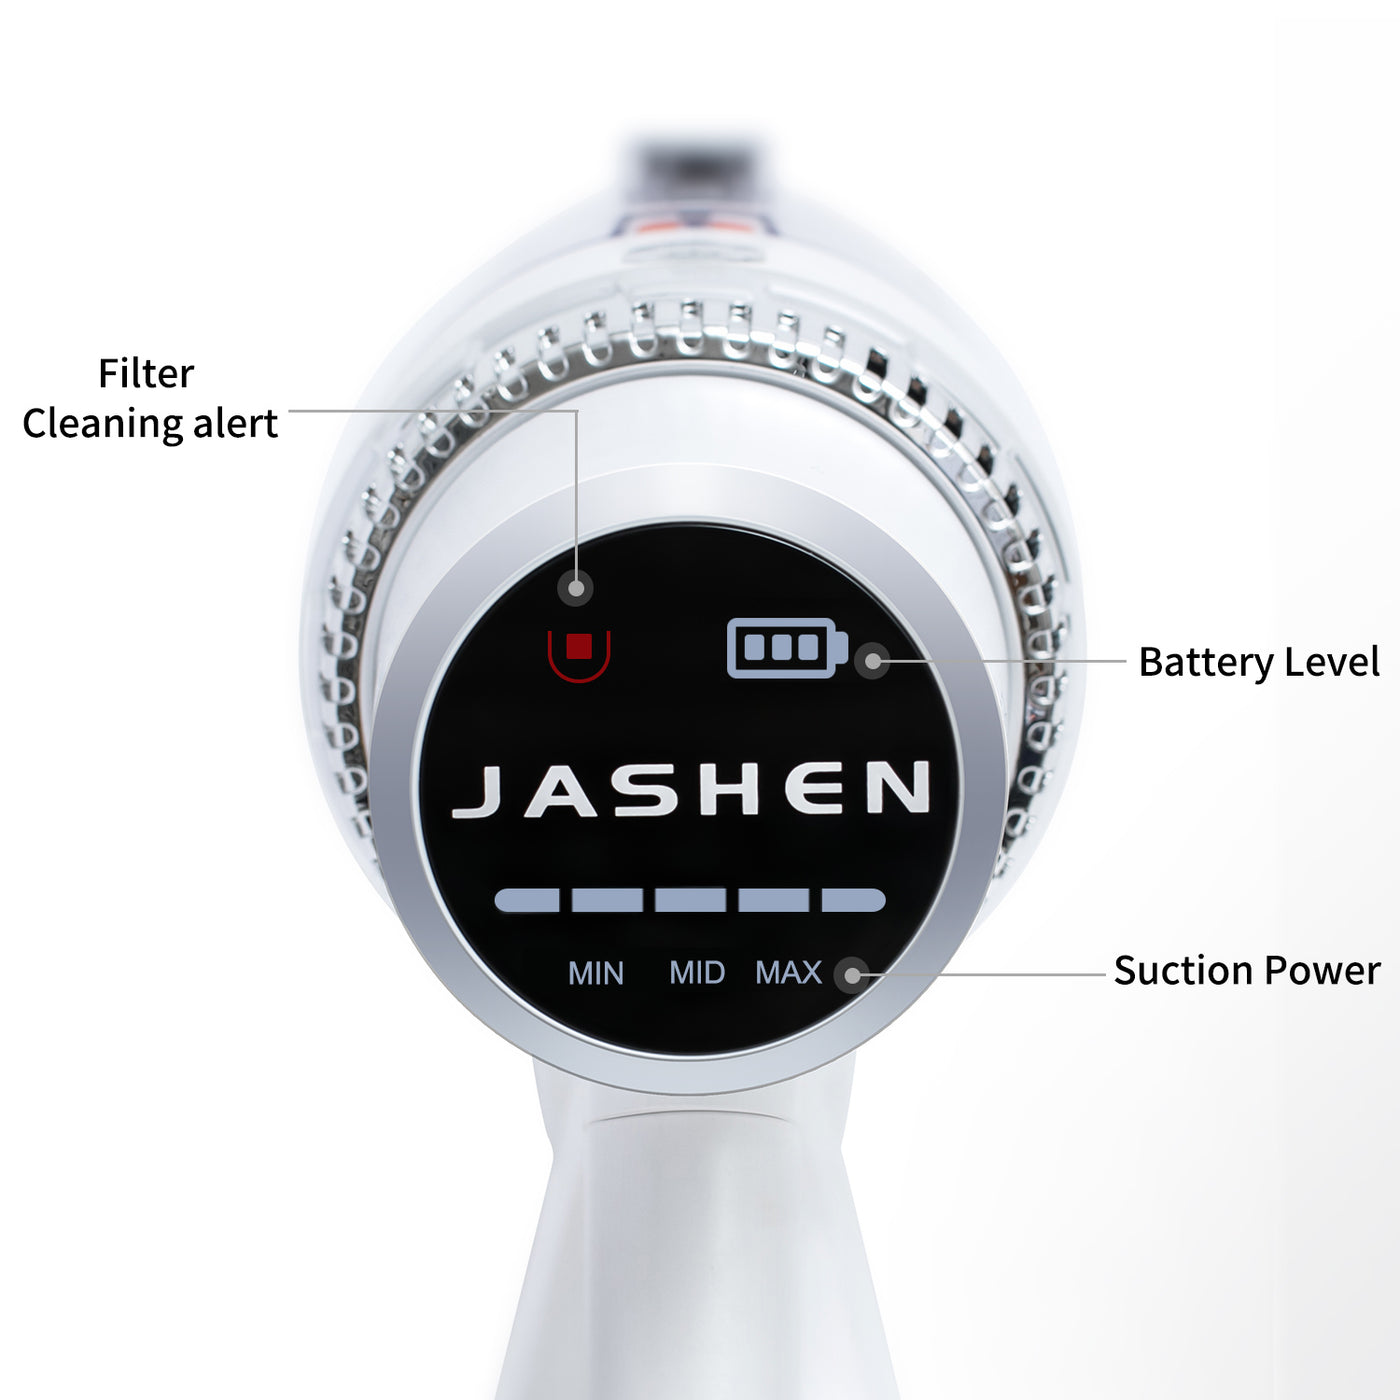 JASHEN S16E Kabelloser Staubsauger (80 Minuten Laufzeit, 350W, 2.500 mAh wechselbarer Lithium-Ionen-Akku, LED-Anzeige, 3-Gang-Modus)